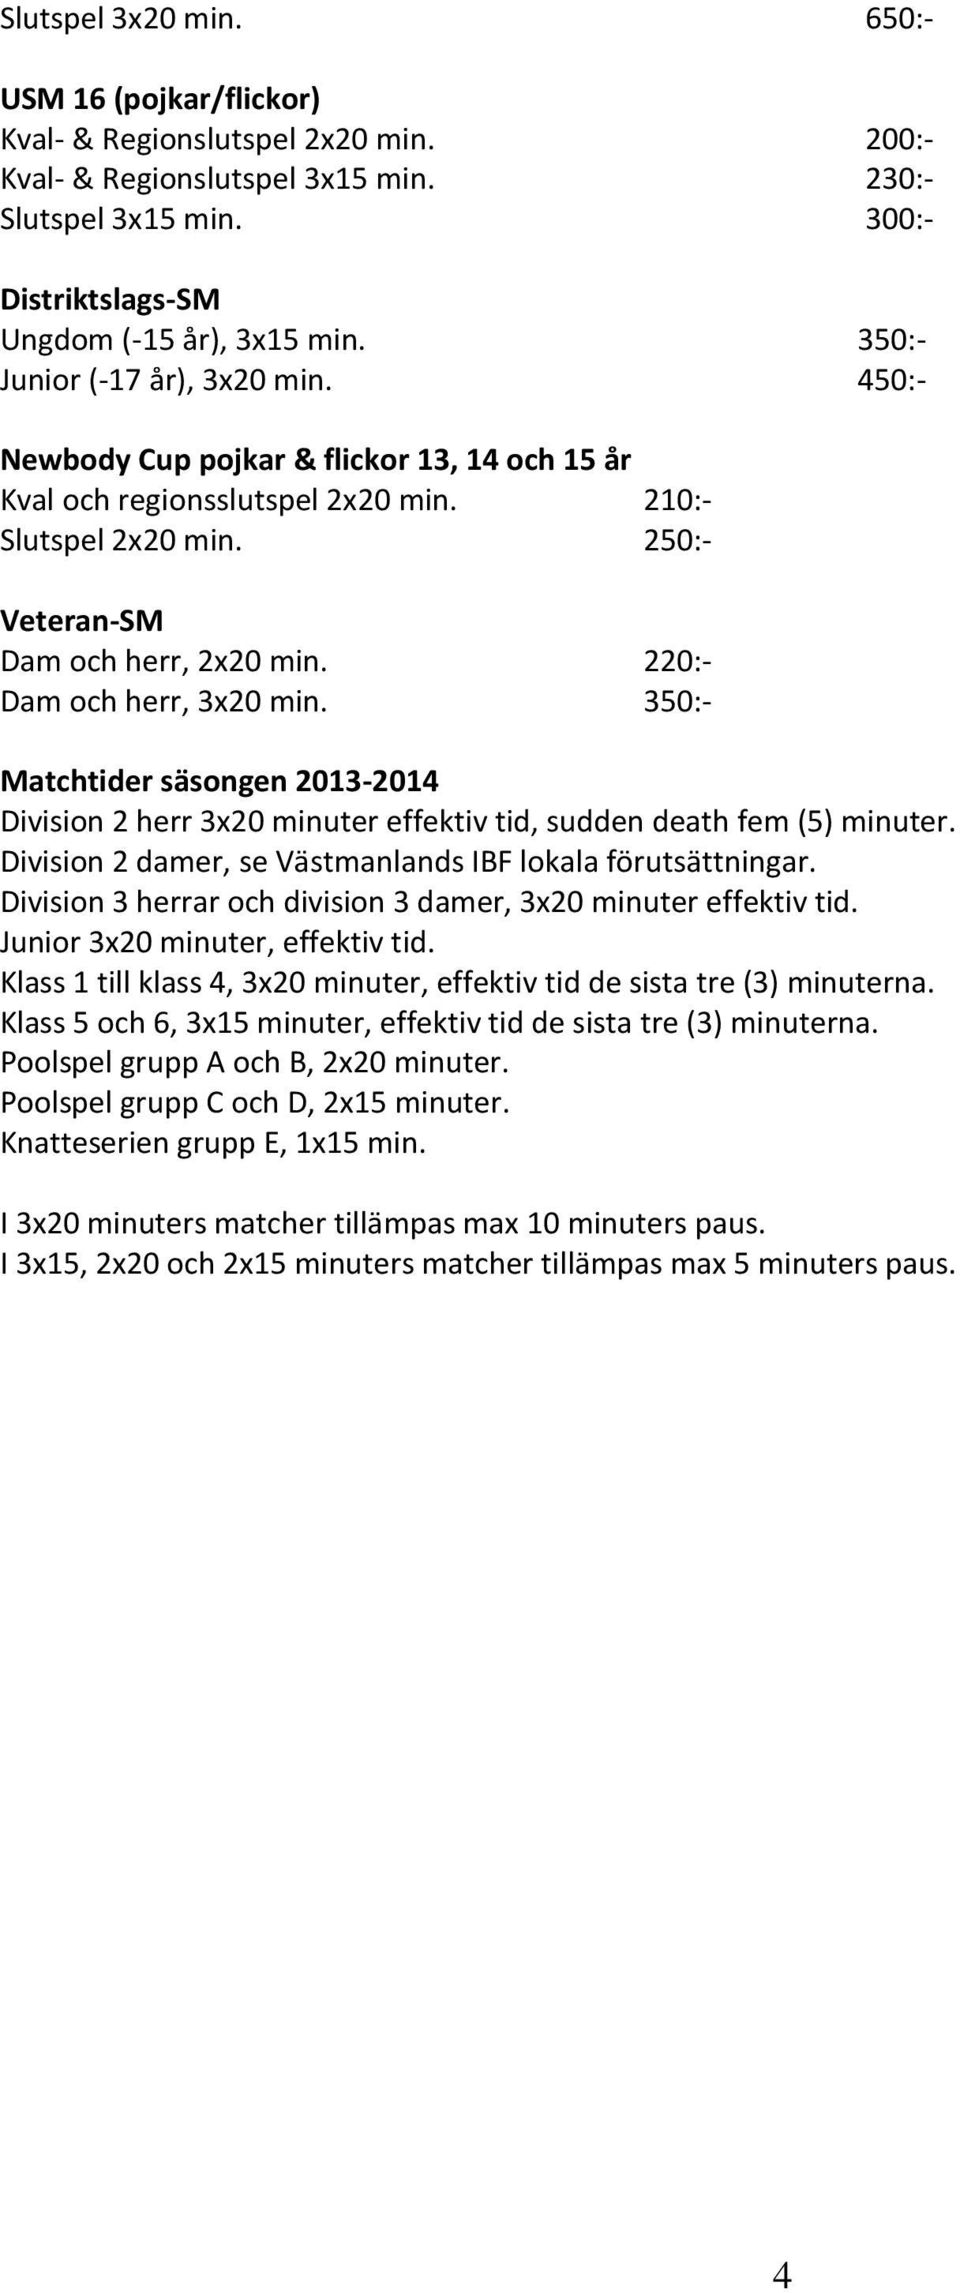 220:- Dam och herr, 3x20 min. 350:- Matchtider säsongen 2013-2014 Division 2 herr 3x20 minuter effektiv tid, sudden death fem (5) minuter. Division 2 damer, se Västmanlands IBF lokala förutsättningar.